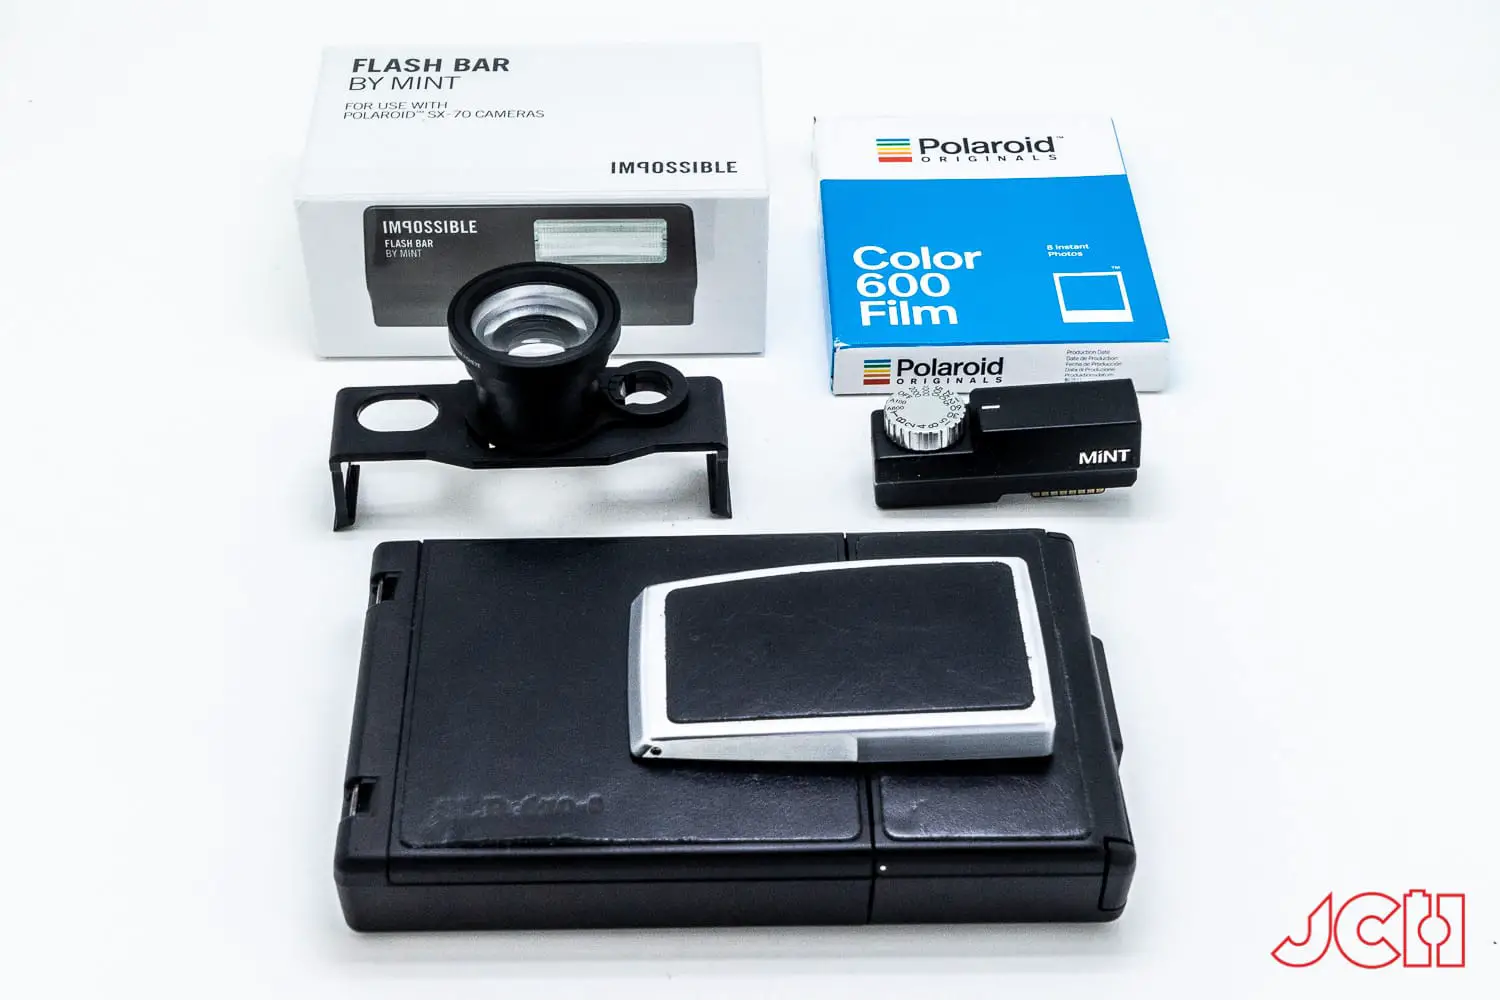 aanvaardbaar Bot dorst Mint Polaroid SLR-670-S Set - Japan Camera Hunter